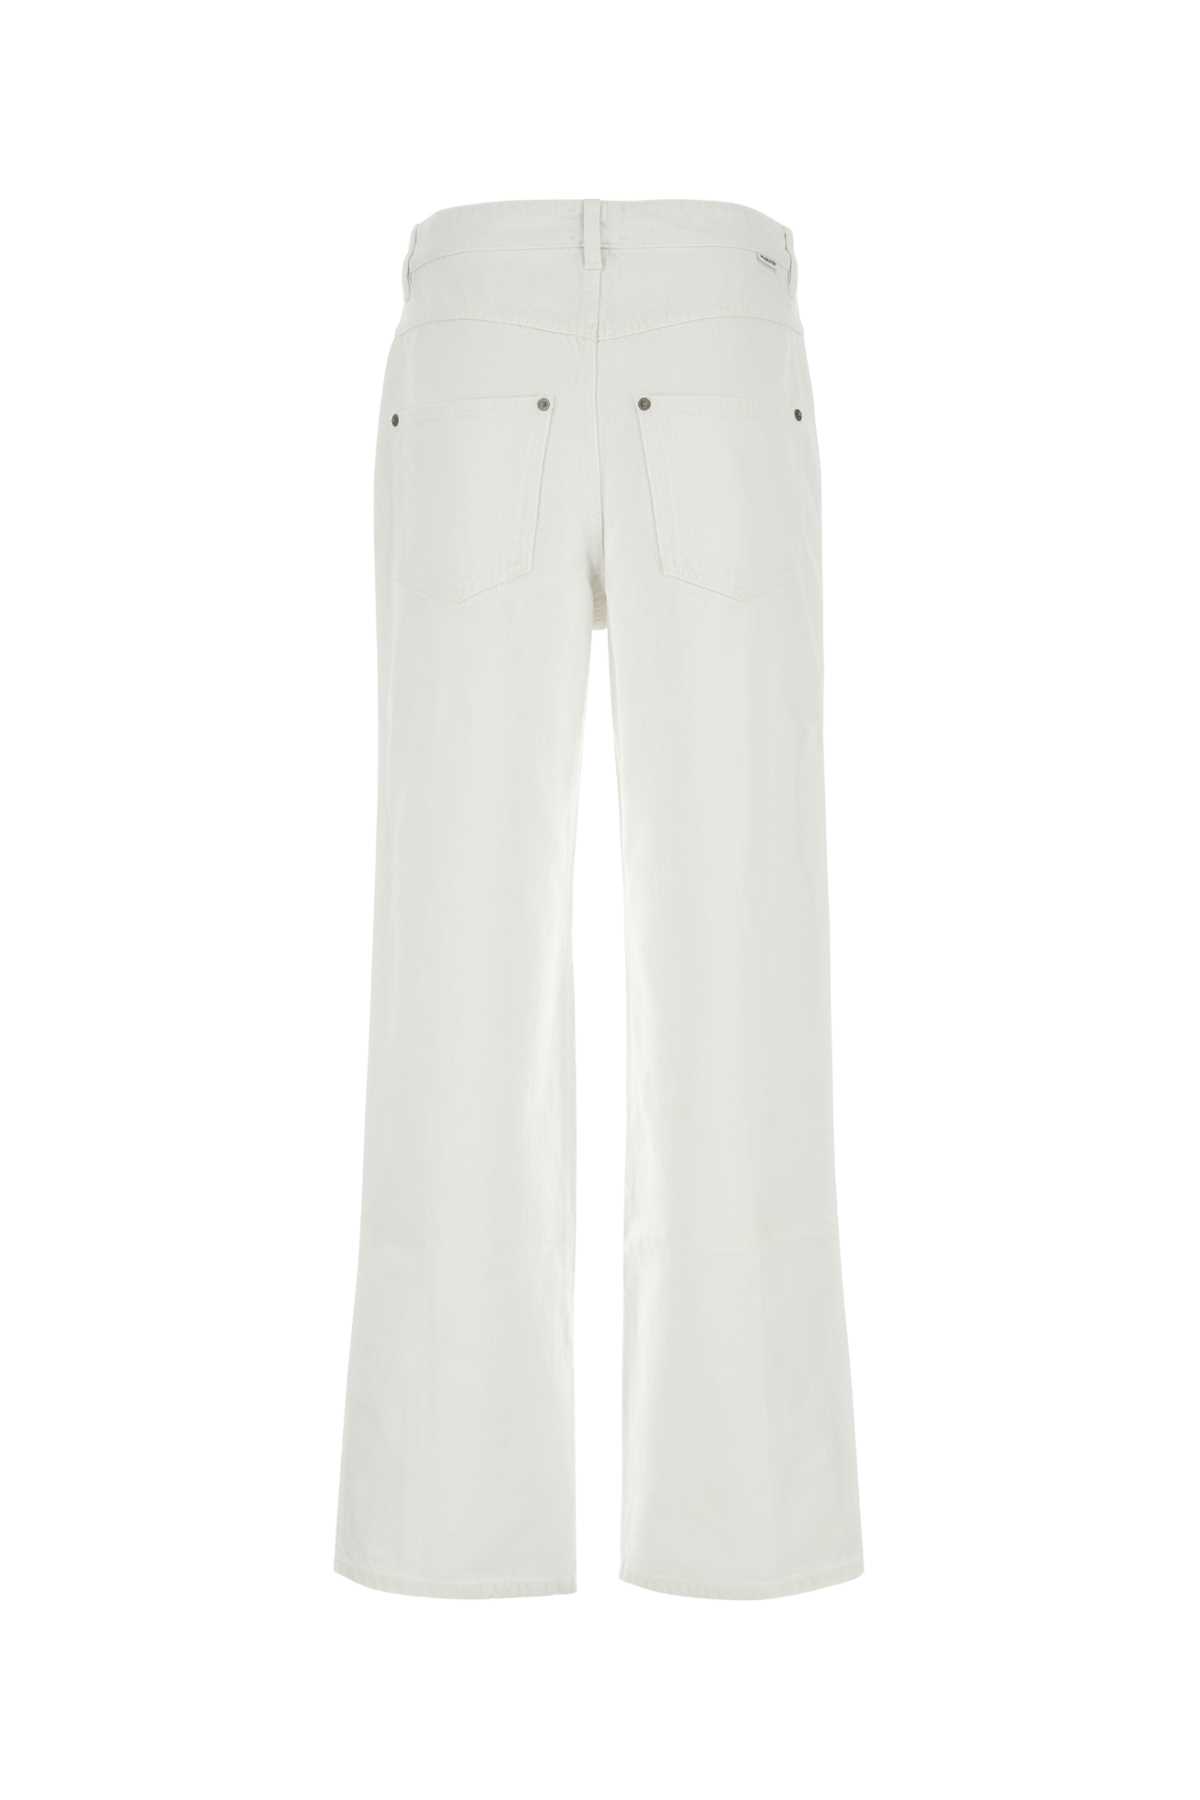 Marant Etoile White Denim Valeria Jeans